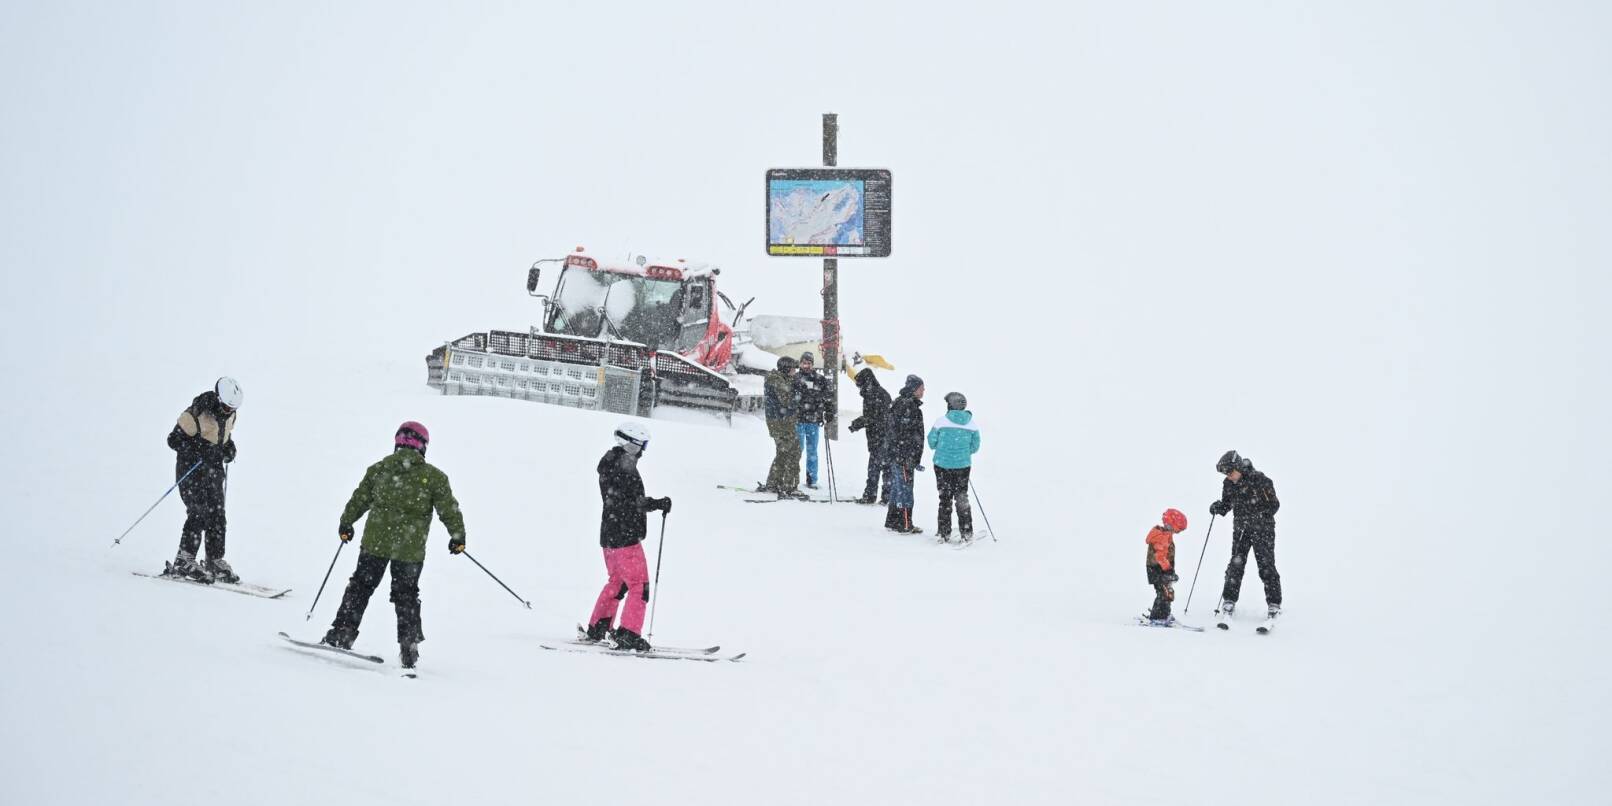 «Starker Schneefall, schlechte Sicht - aber pure Freude über massenhaft Schnee», fasst die Sprecherin der Bayerischen Zugspitzbahn den Auftakt an Deutschlands höchstem Berg zusammen.